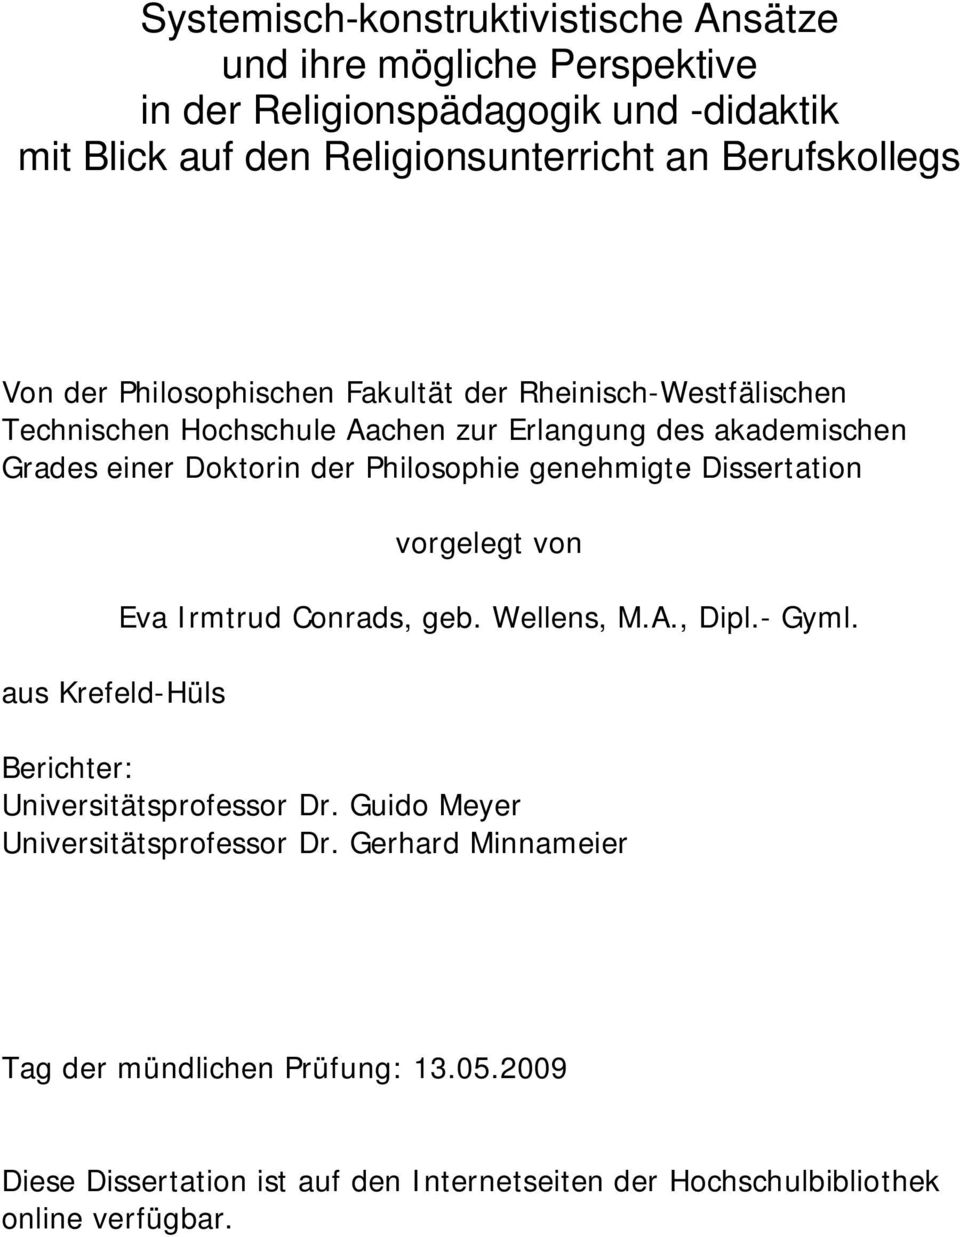 genehmigte Dissertation aus Krefeld-Hüls vorgelegt von Eva Irmtrud Conrads, geb. Wellens, M.A., Dipl.- Gyml. Berichter: Universitätsprofessor Dr.